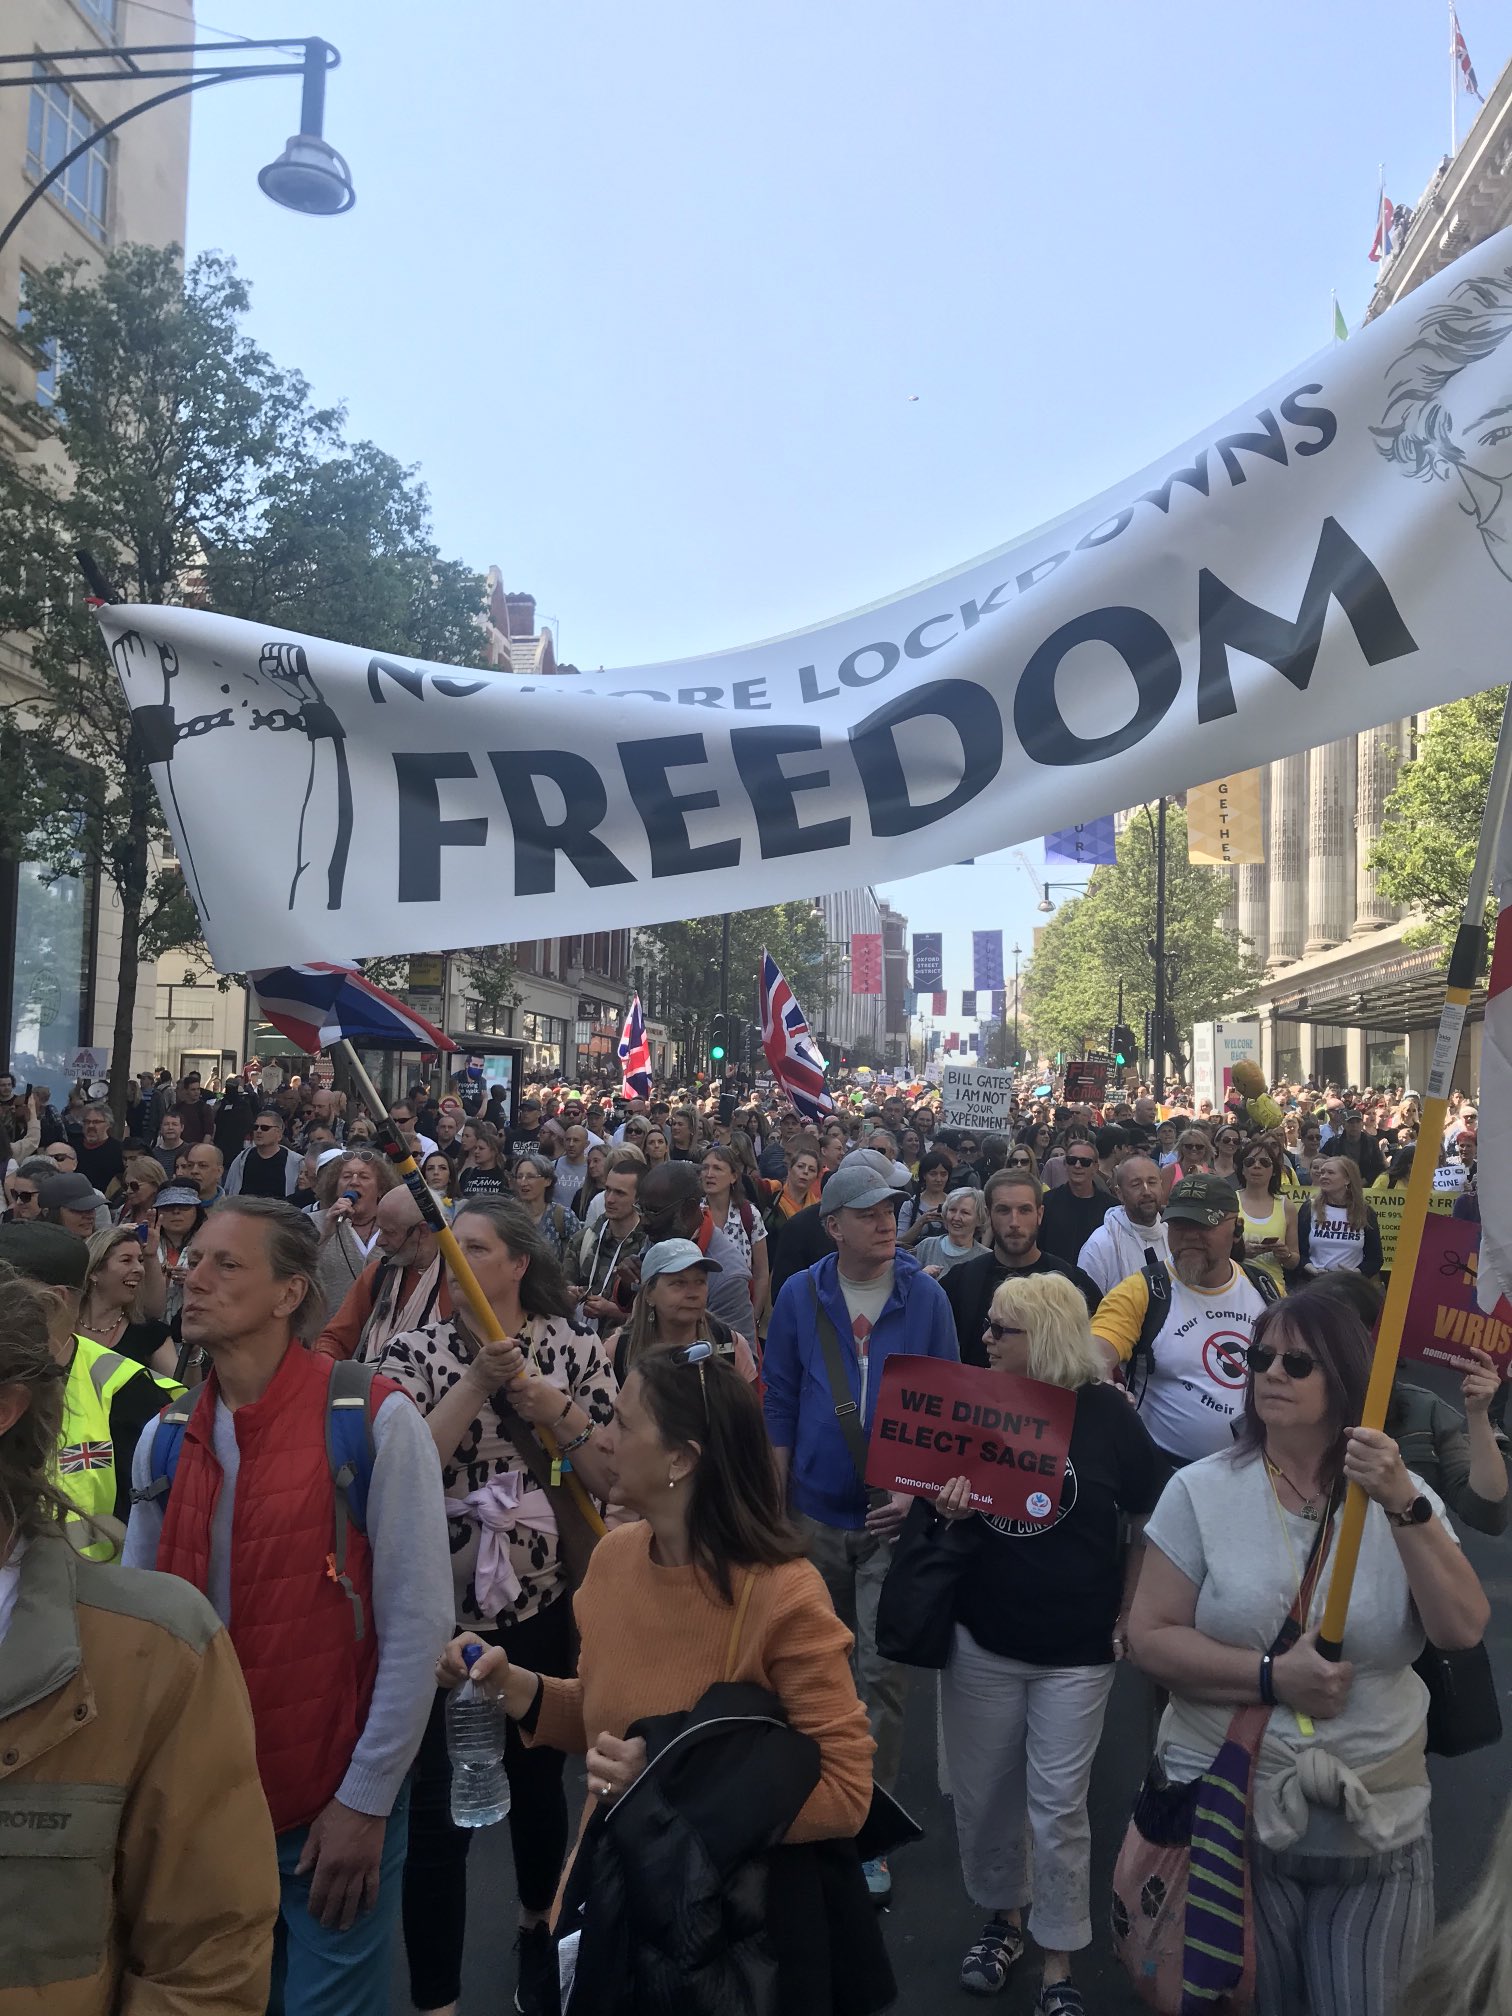 протесты в Лондоне. Скриншот из твиттера Бен